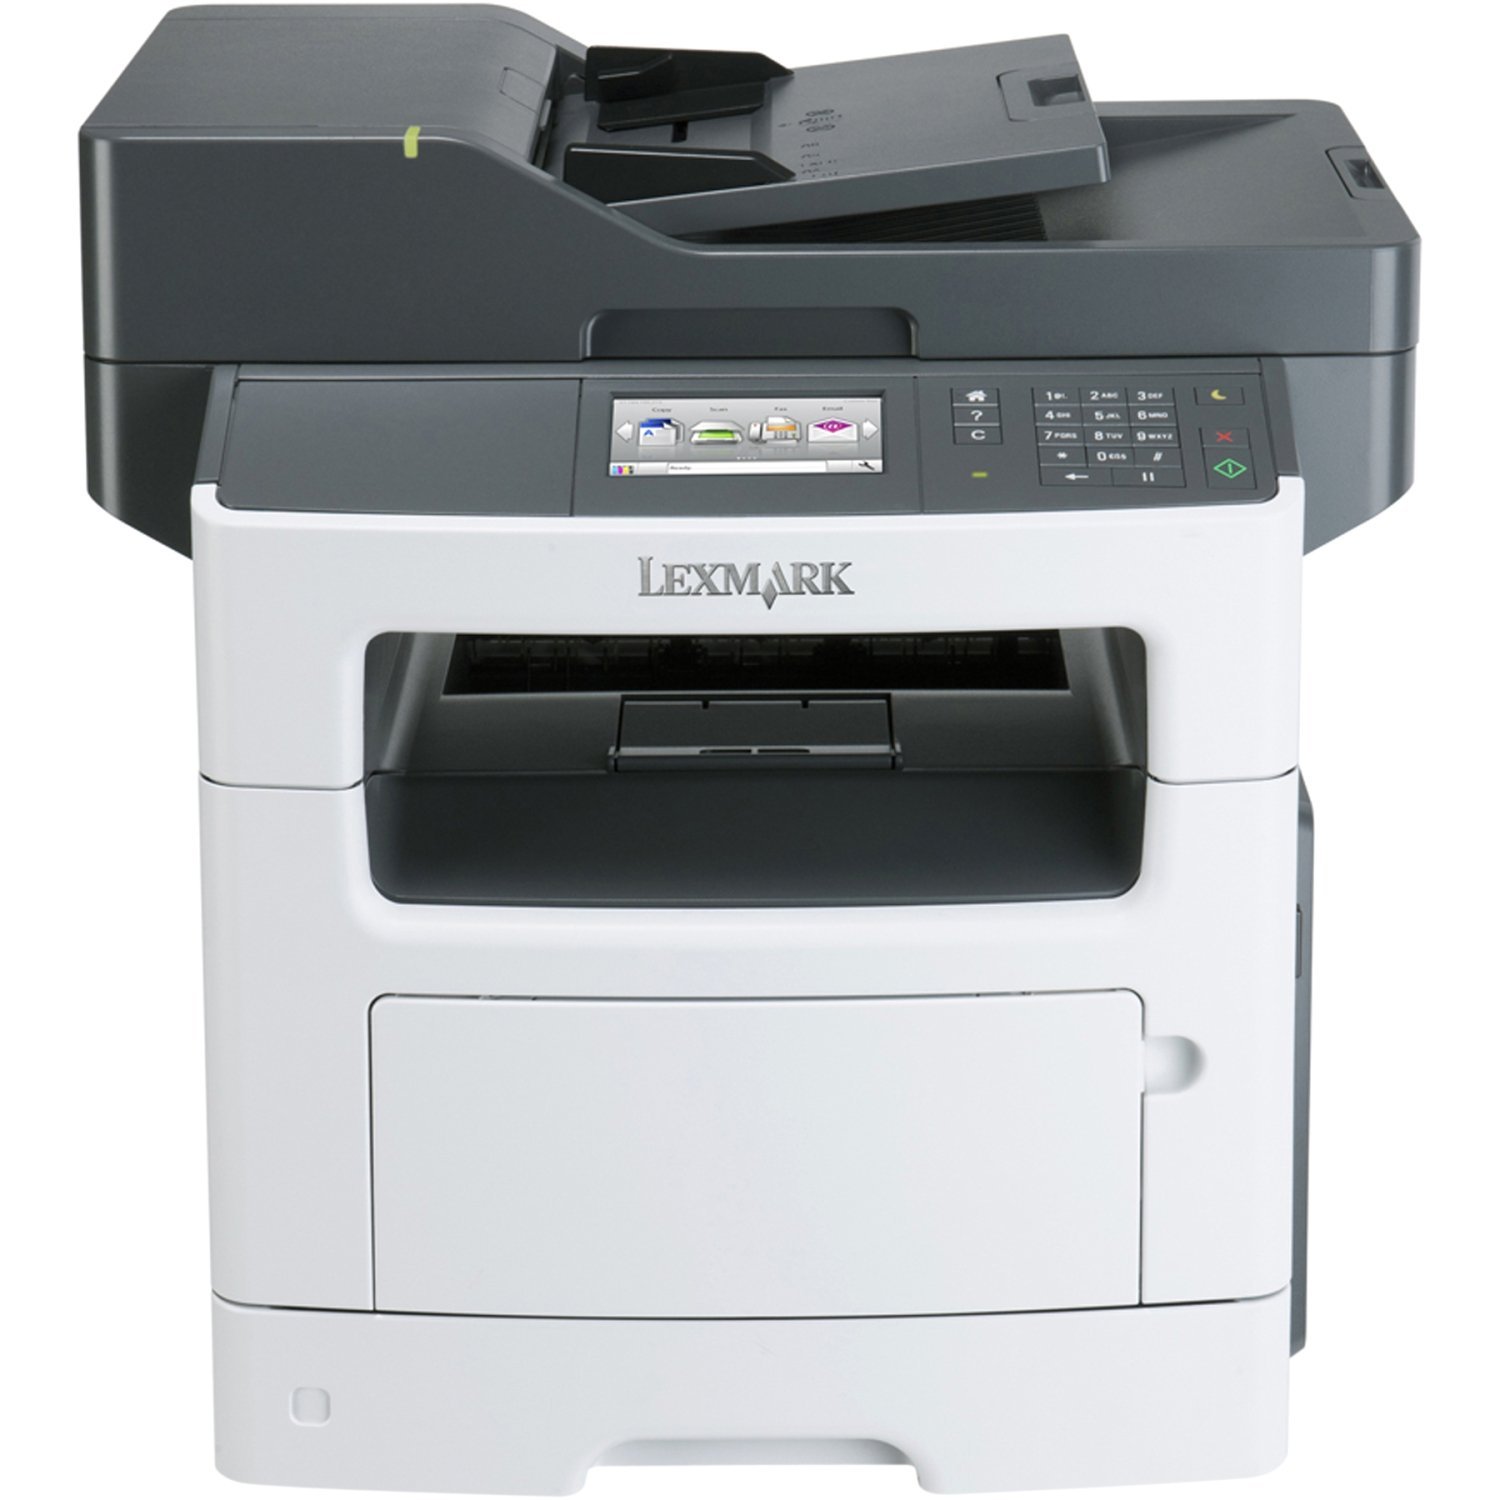 Скачать бесплатно драйвера для принтера lexmark z617